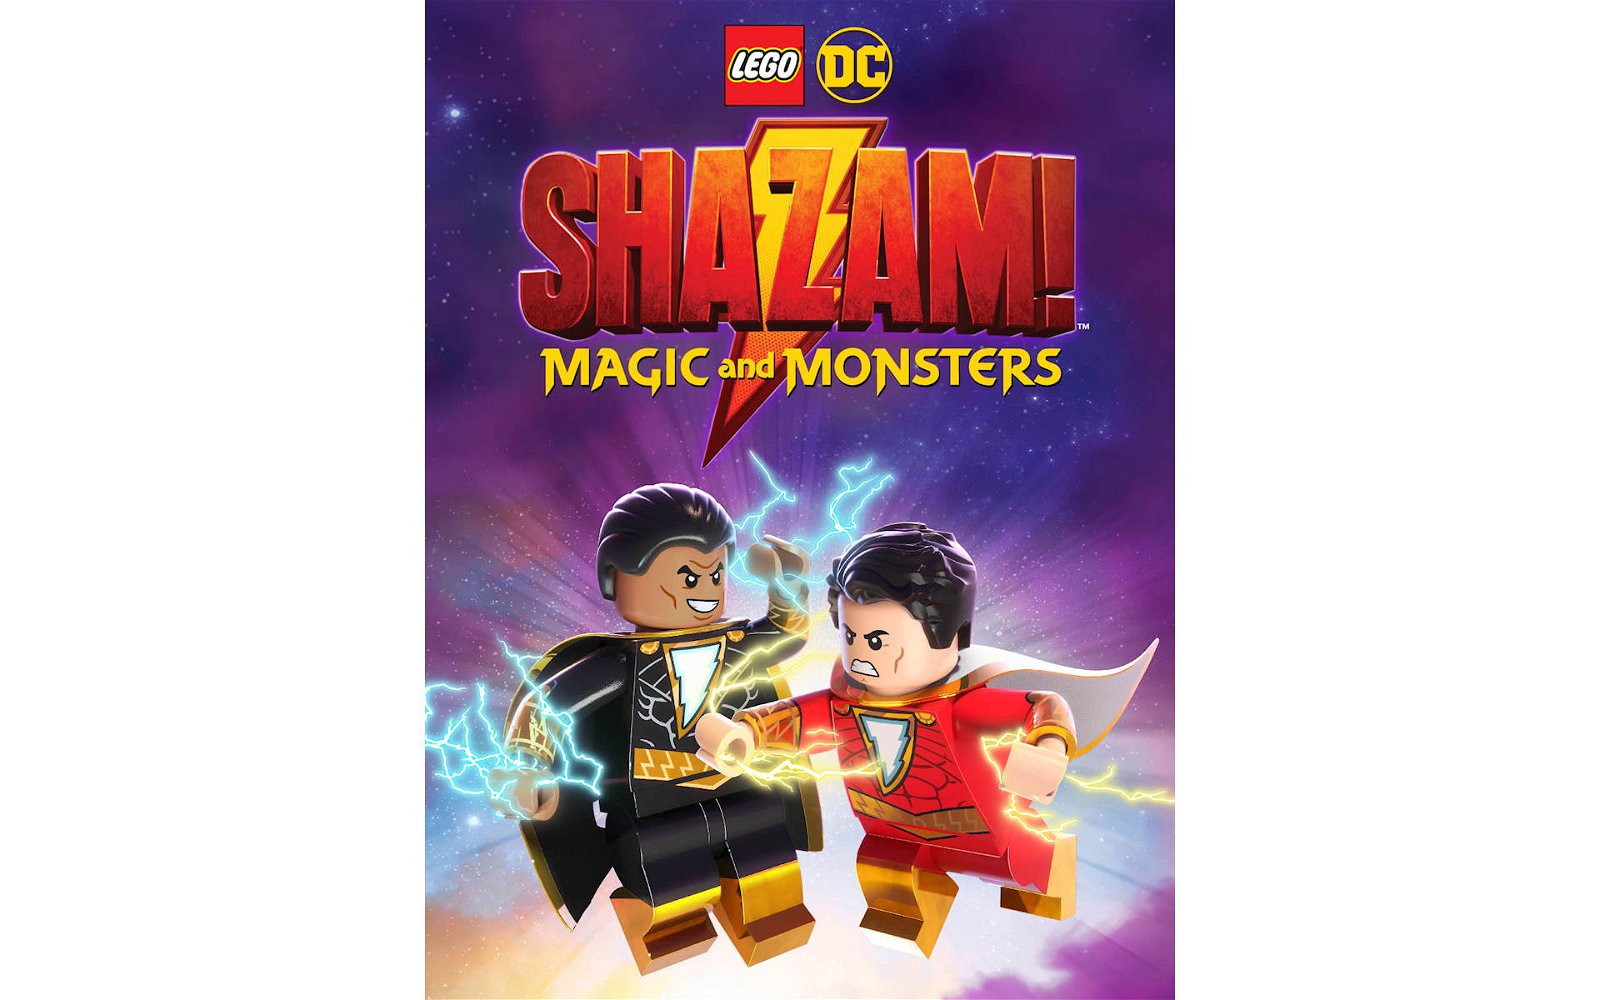 Immagine di LEGO: annunciato il nuovo film "LEGO DC Shazam: Magic and Monsters"